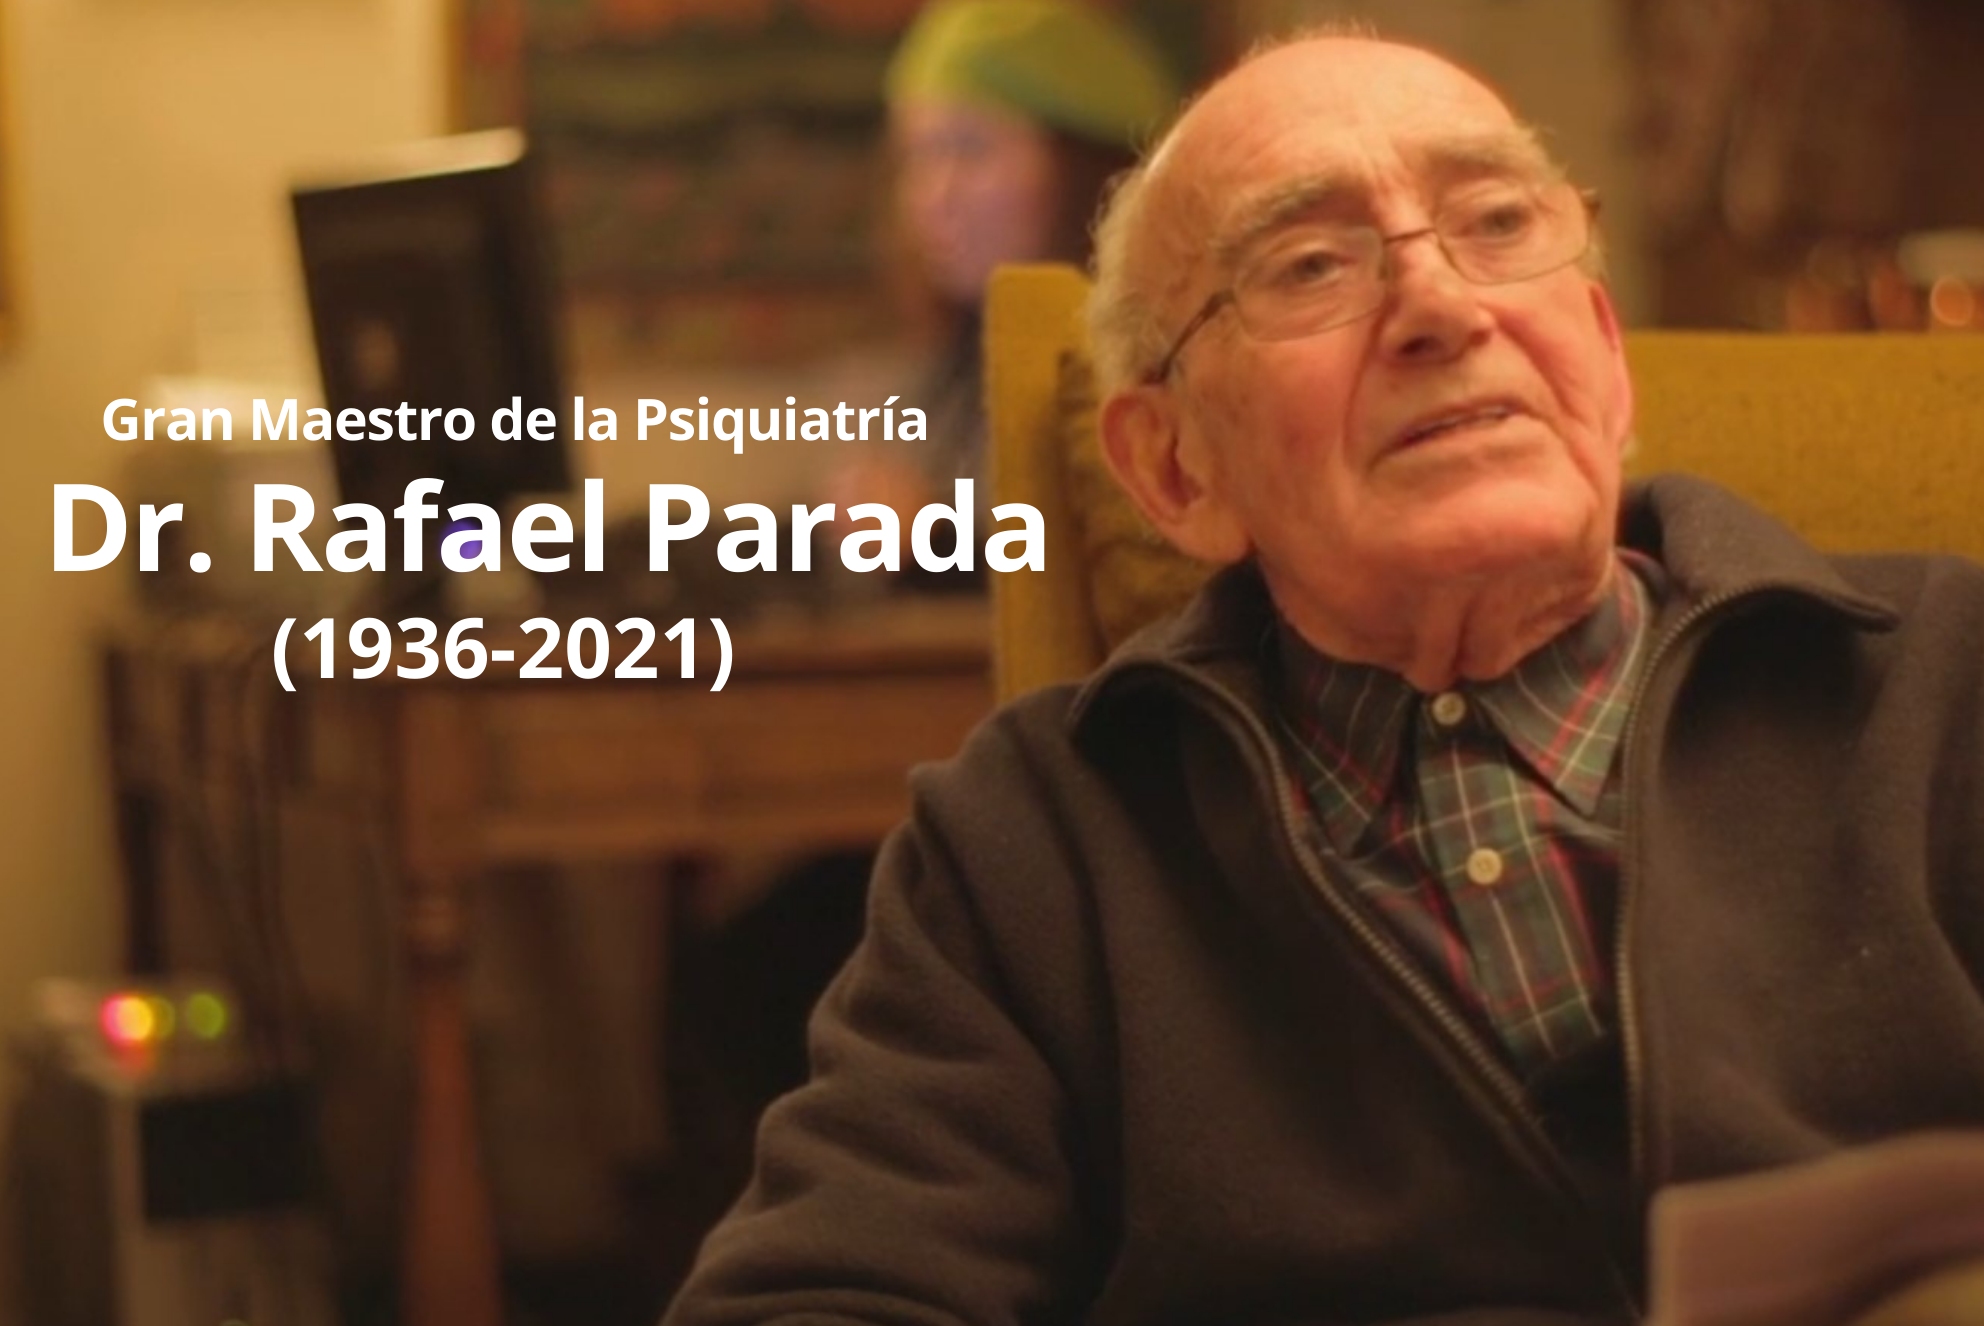 Instituto Psiquiátrico despide a Gran Maestro de la Psiquiatría Dr. Rafael Parada Allende